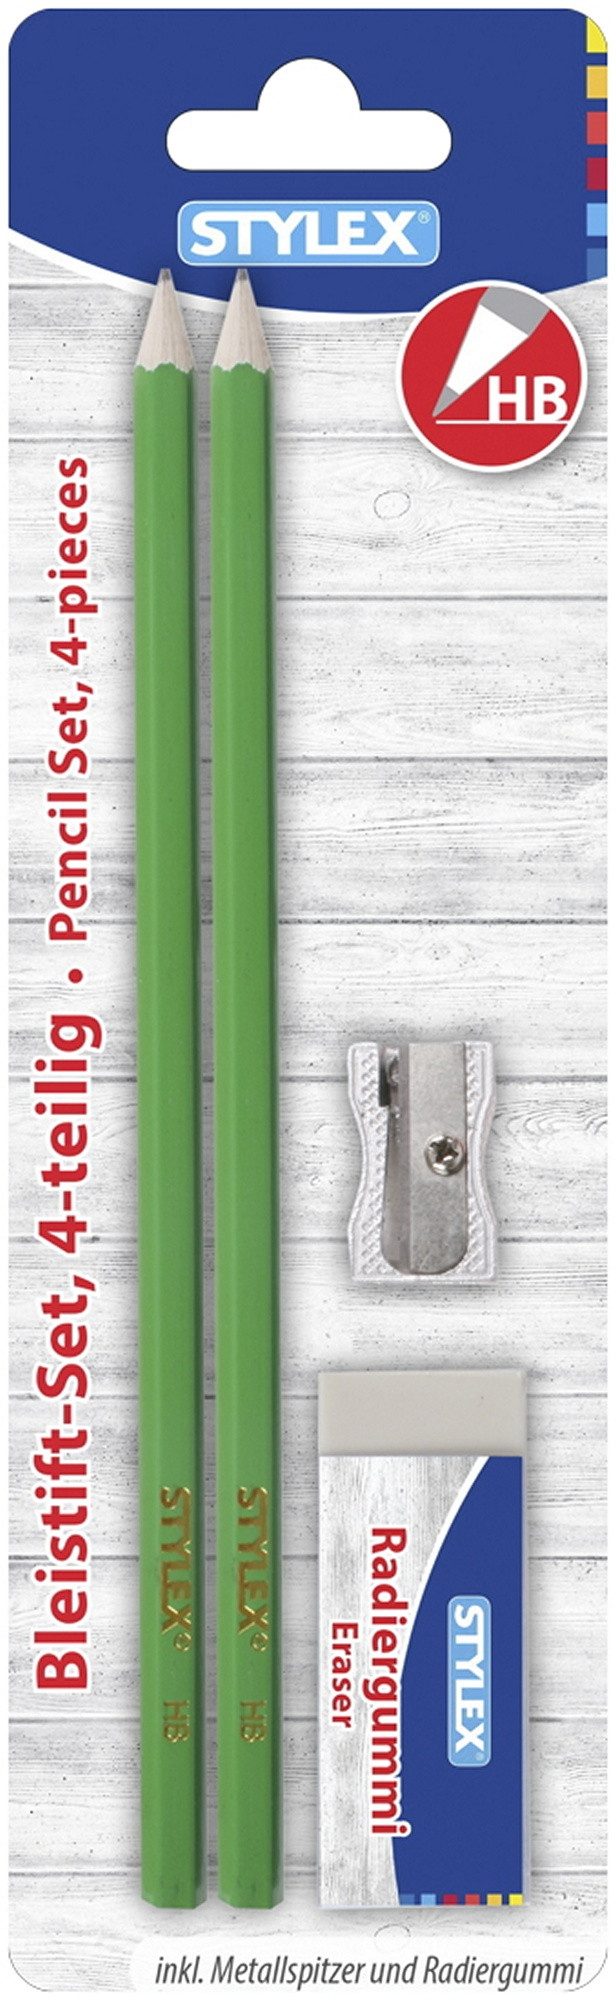 Stylex Schreibwaren Anspitzer Bleistiftset / 2 Bleistifte HB, 1 Metall-Anspitzer + Radierer / Farbe: